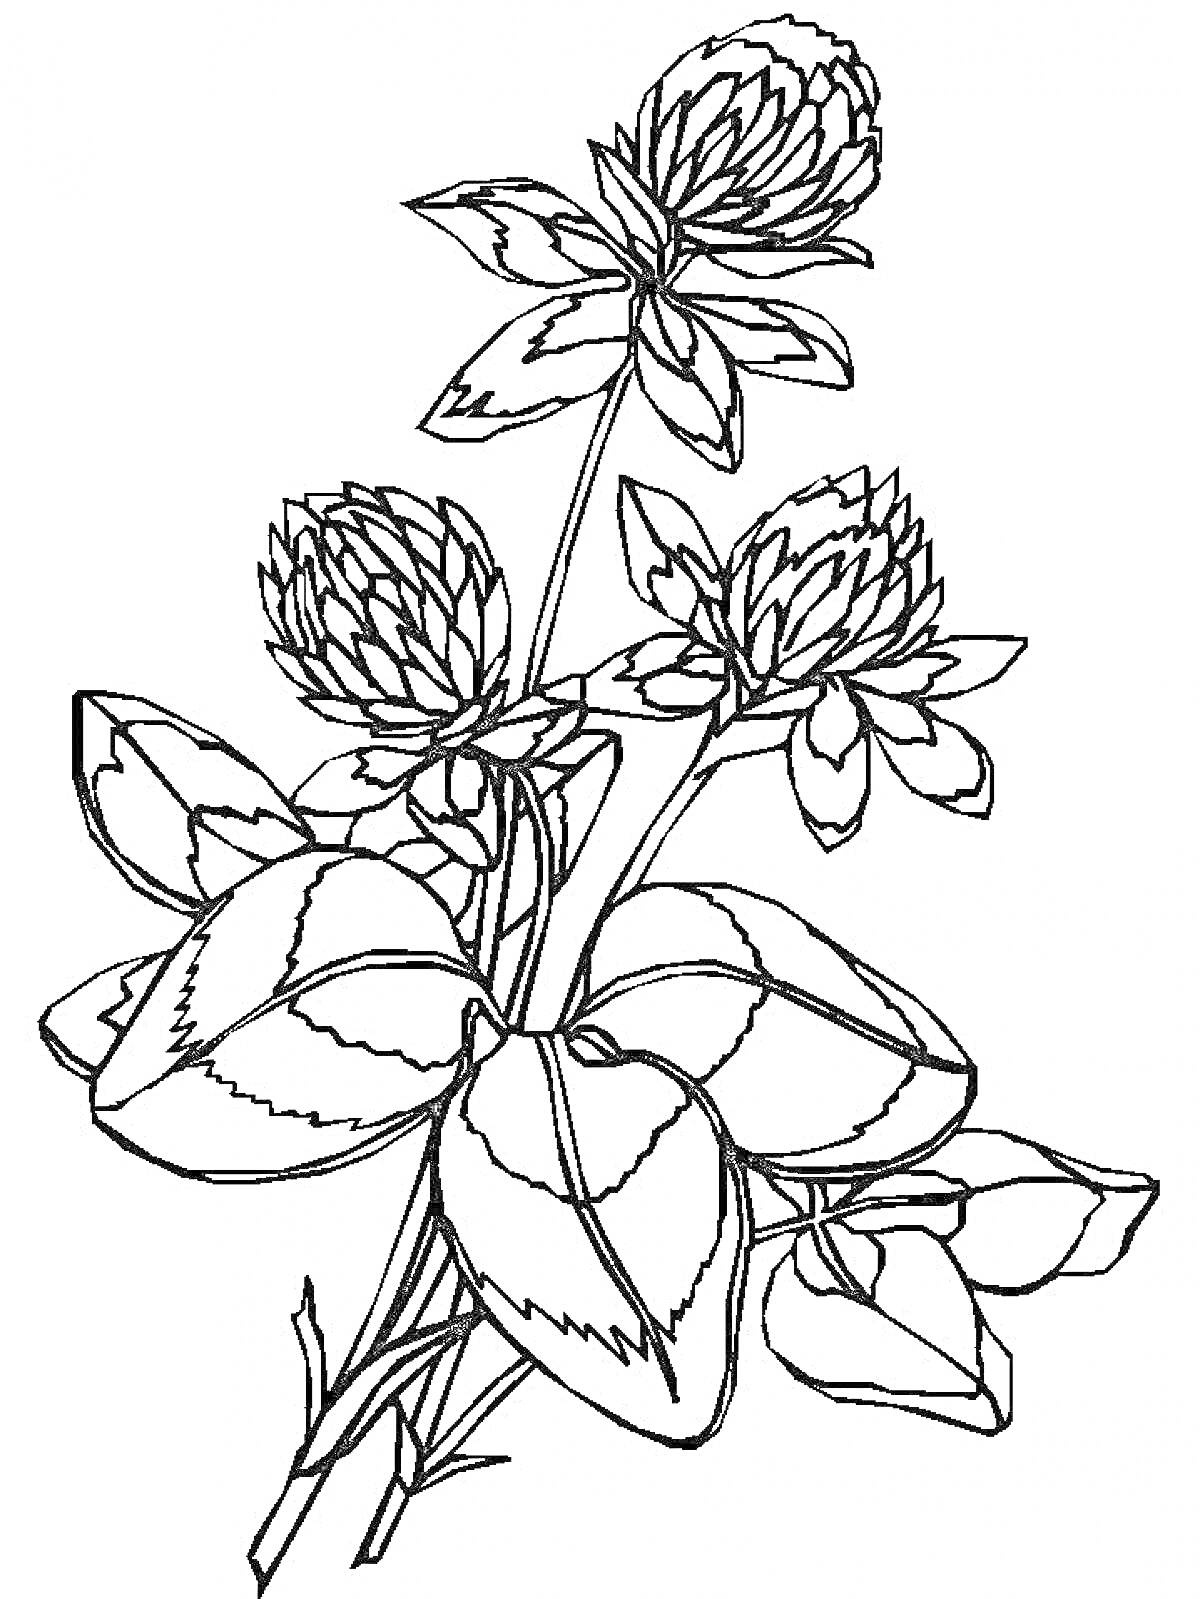 Раскраска Клевер на лугу. Цветы и листья клевера.